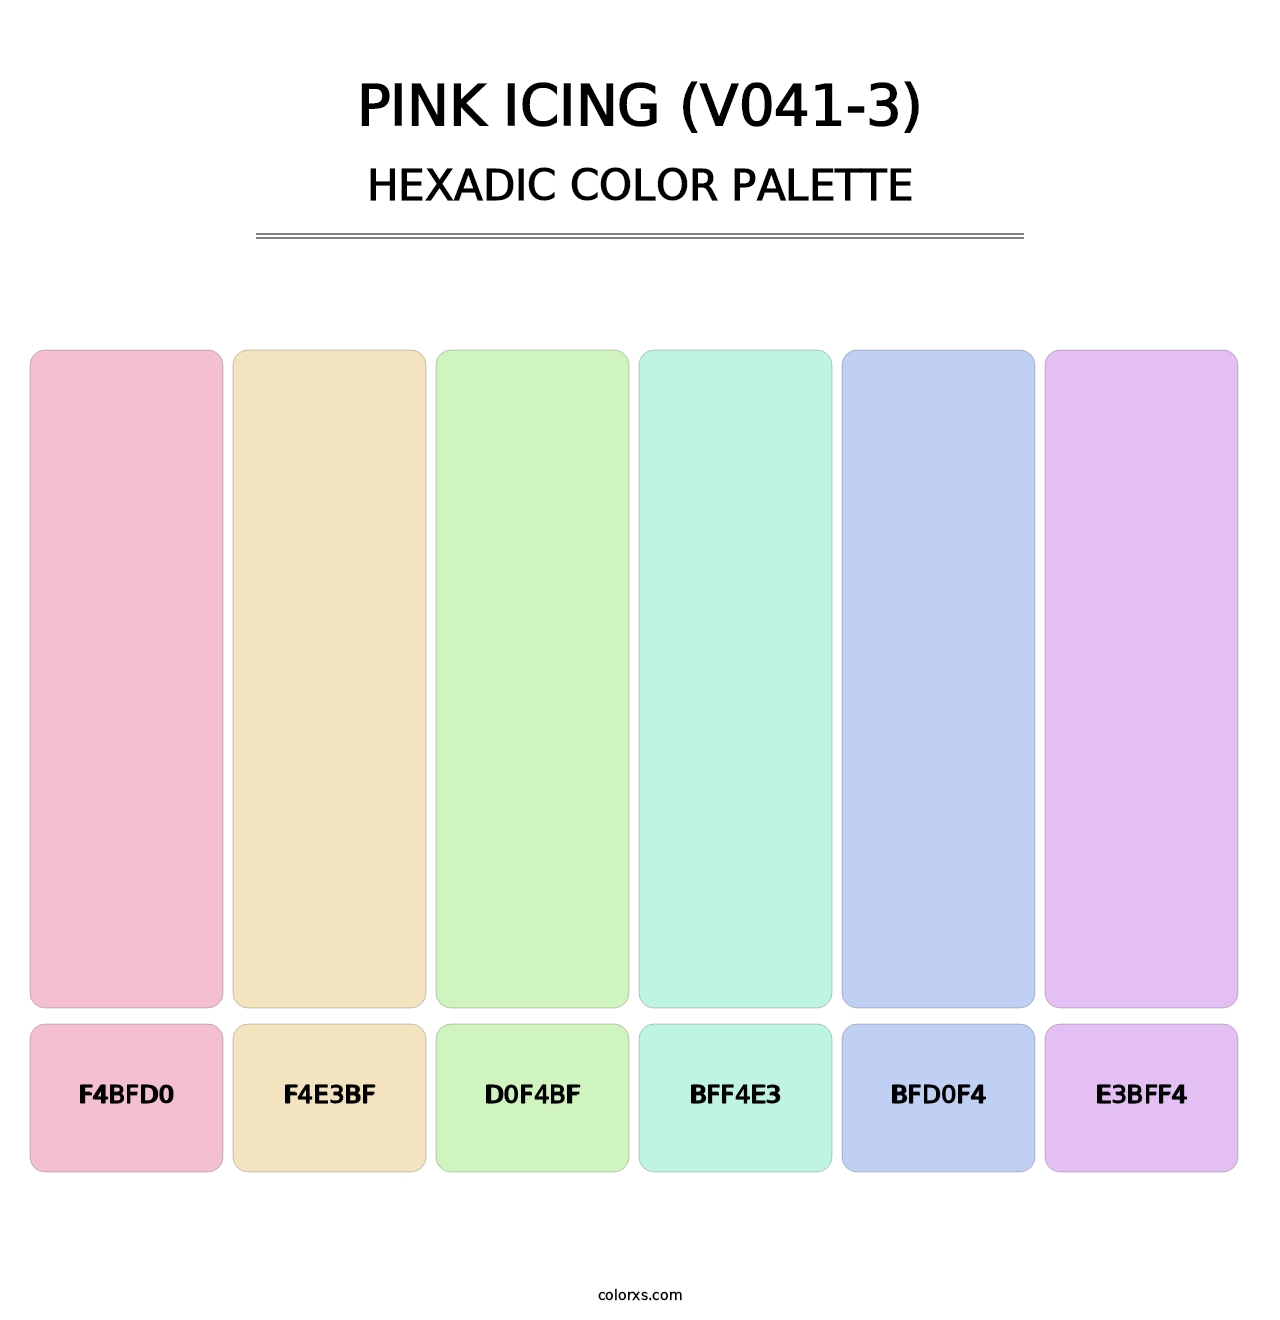 Pink Icing (V041-3) - Hexadic Color Palette